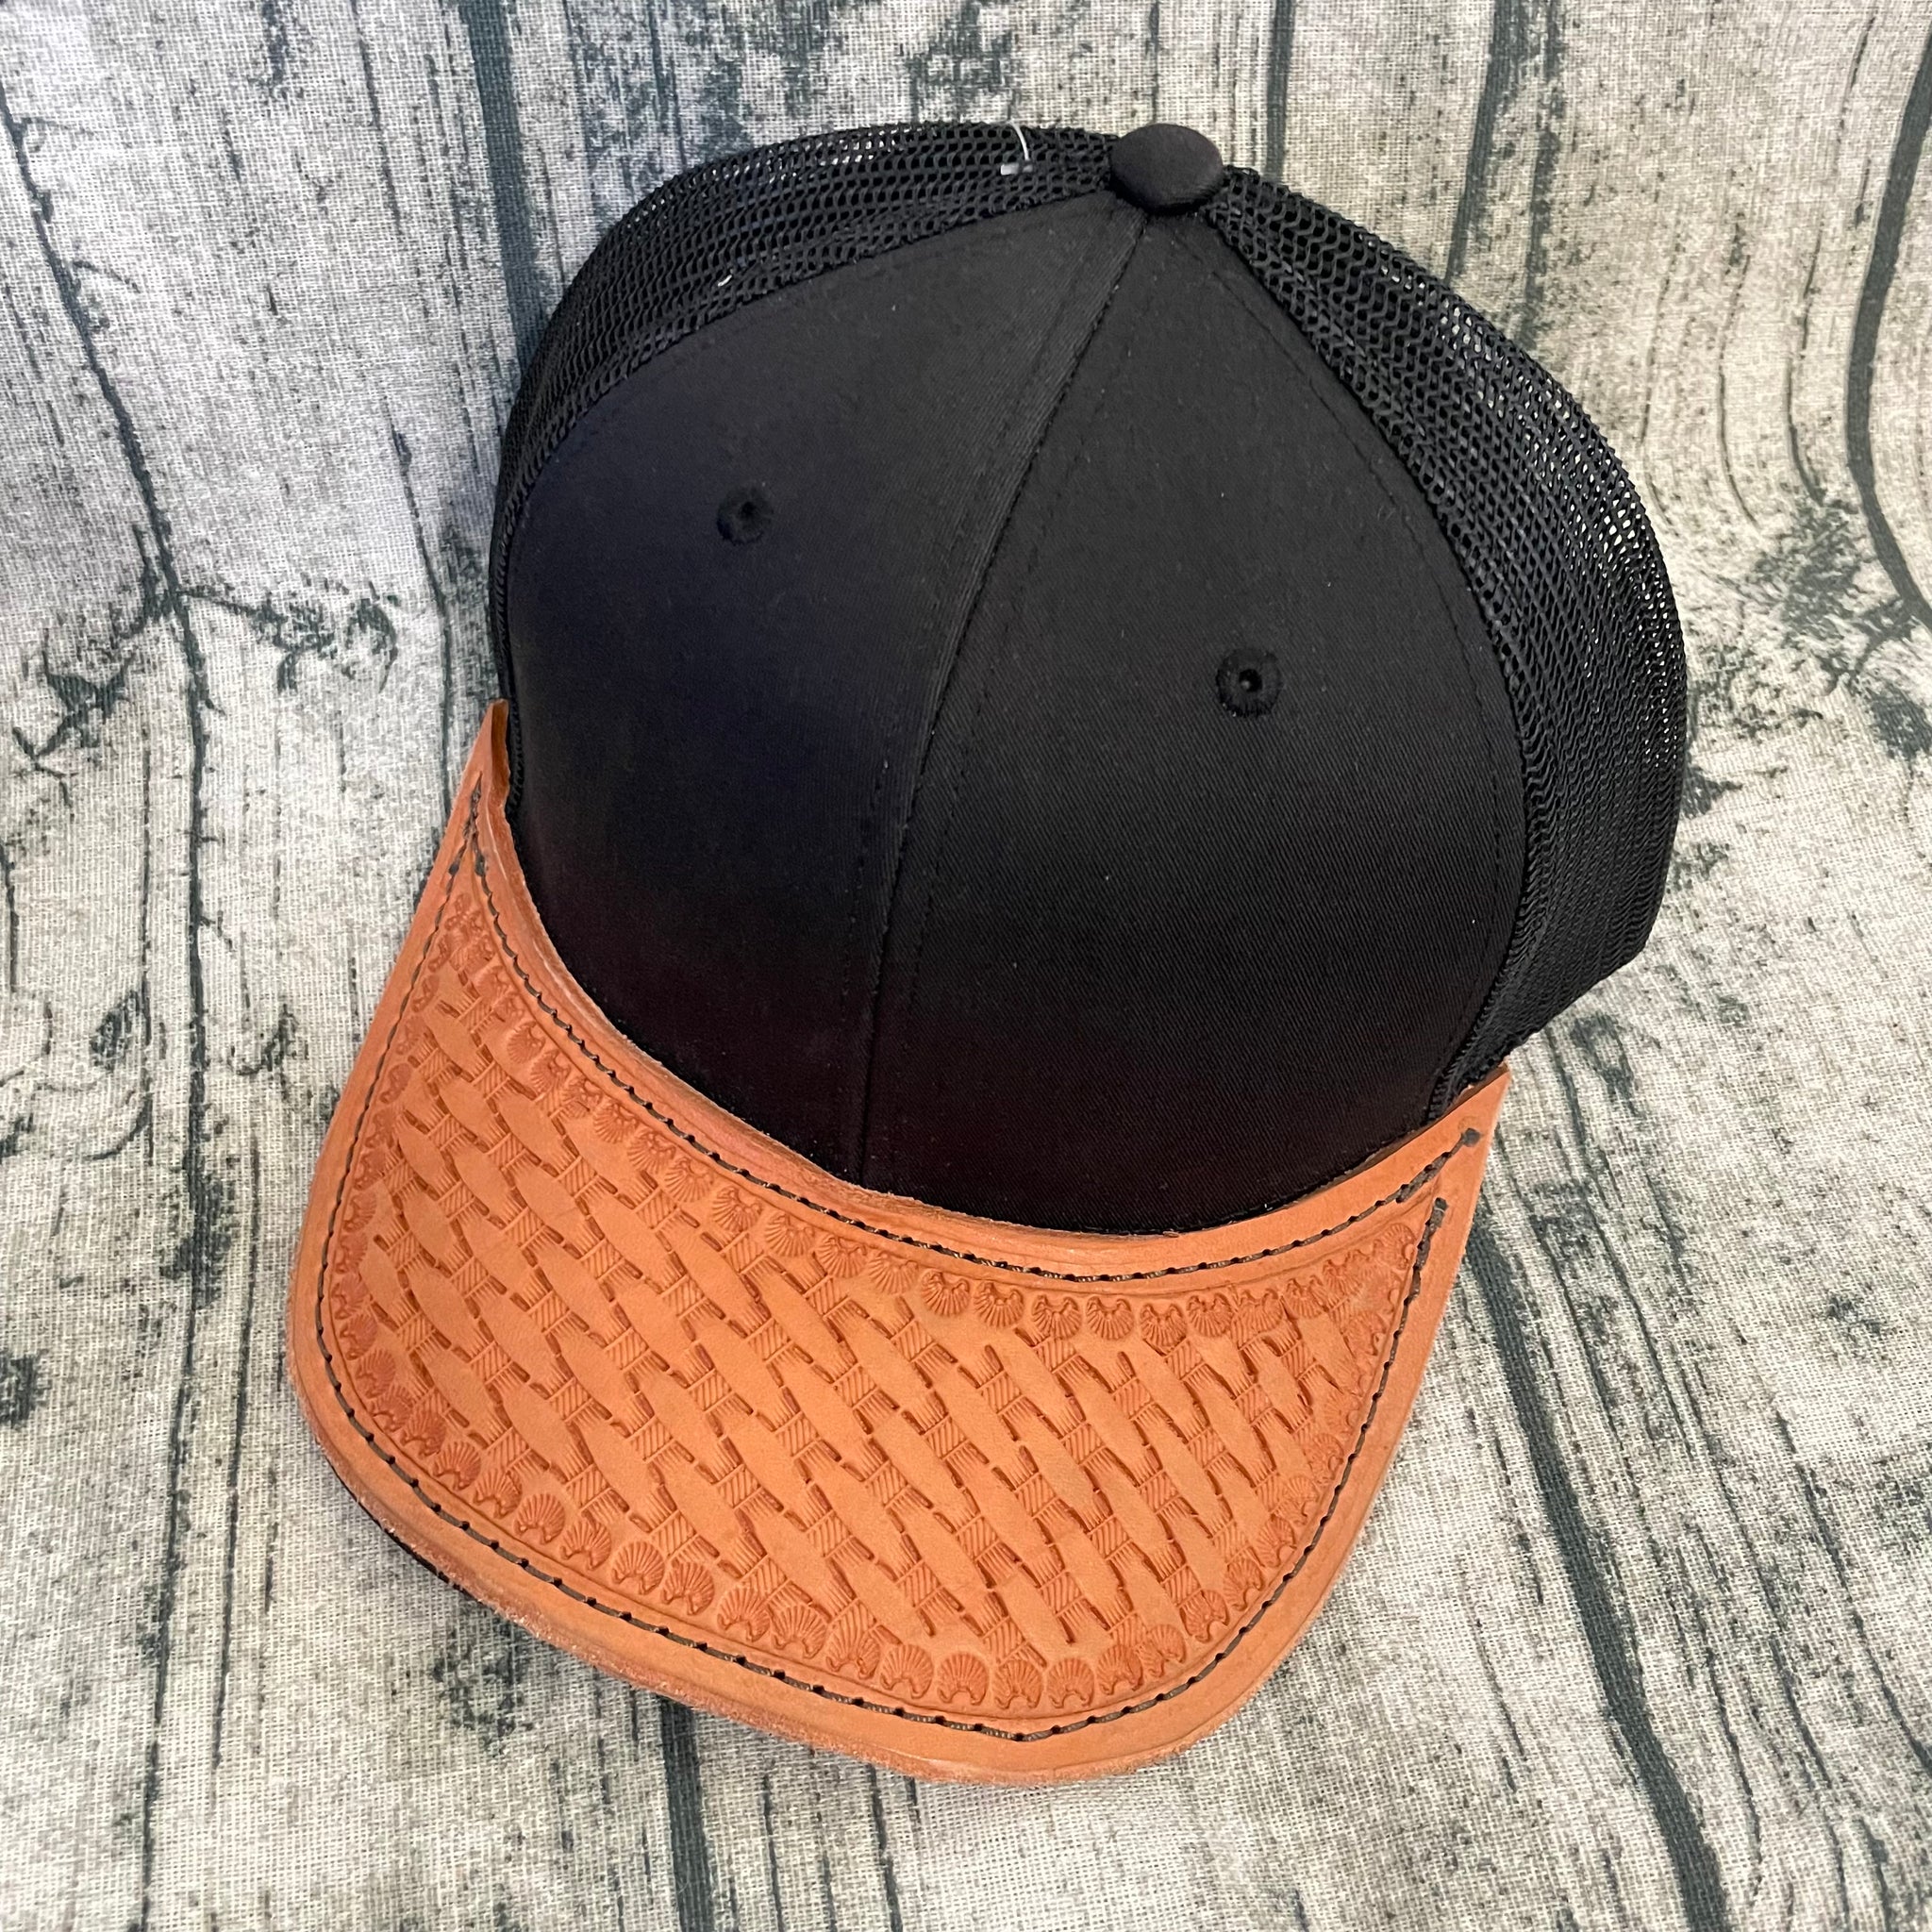 Hats, Caps, Baseball Caps, Leather Hats, High Quality Hats